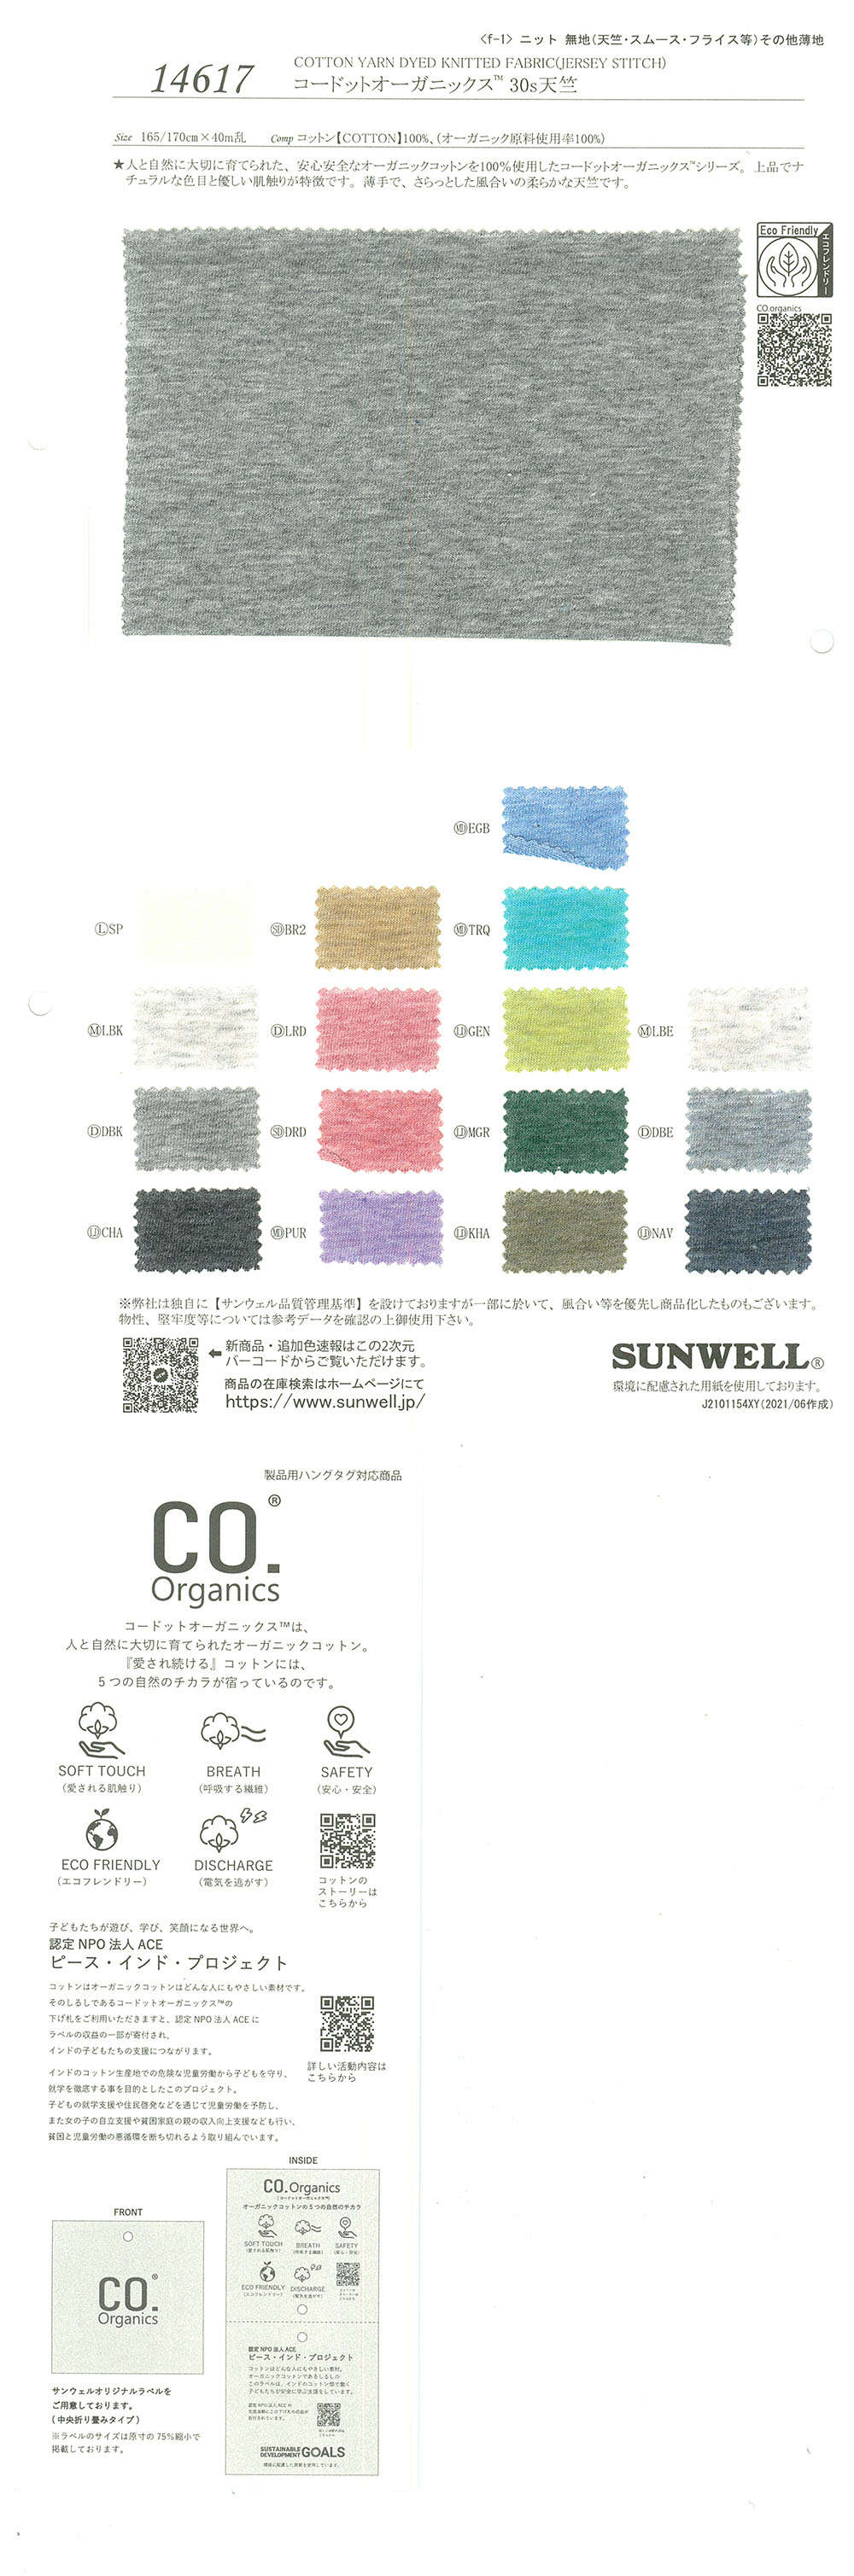 14617 Cordot Organics (R) 30 Algodão Tianzhu De Linha Simples[Têxtil / Tecido] SUNWELL